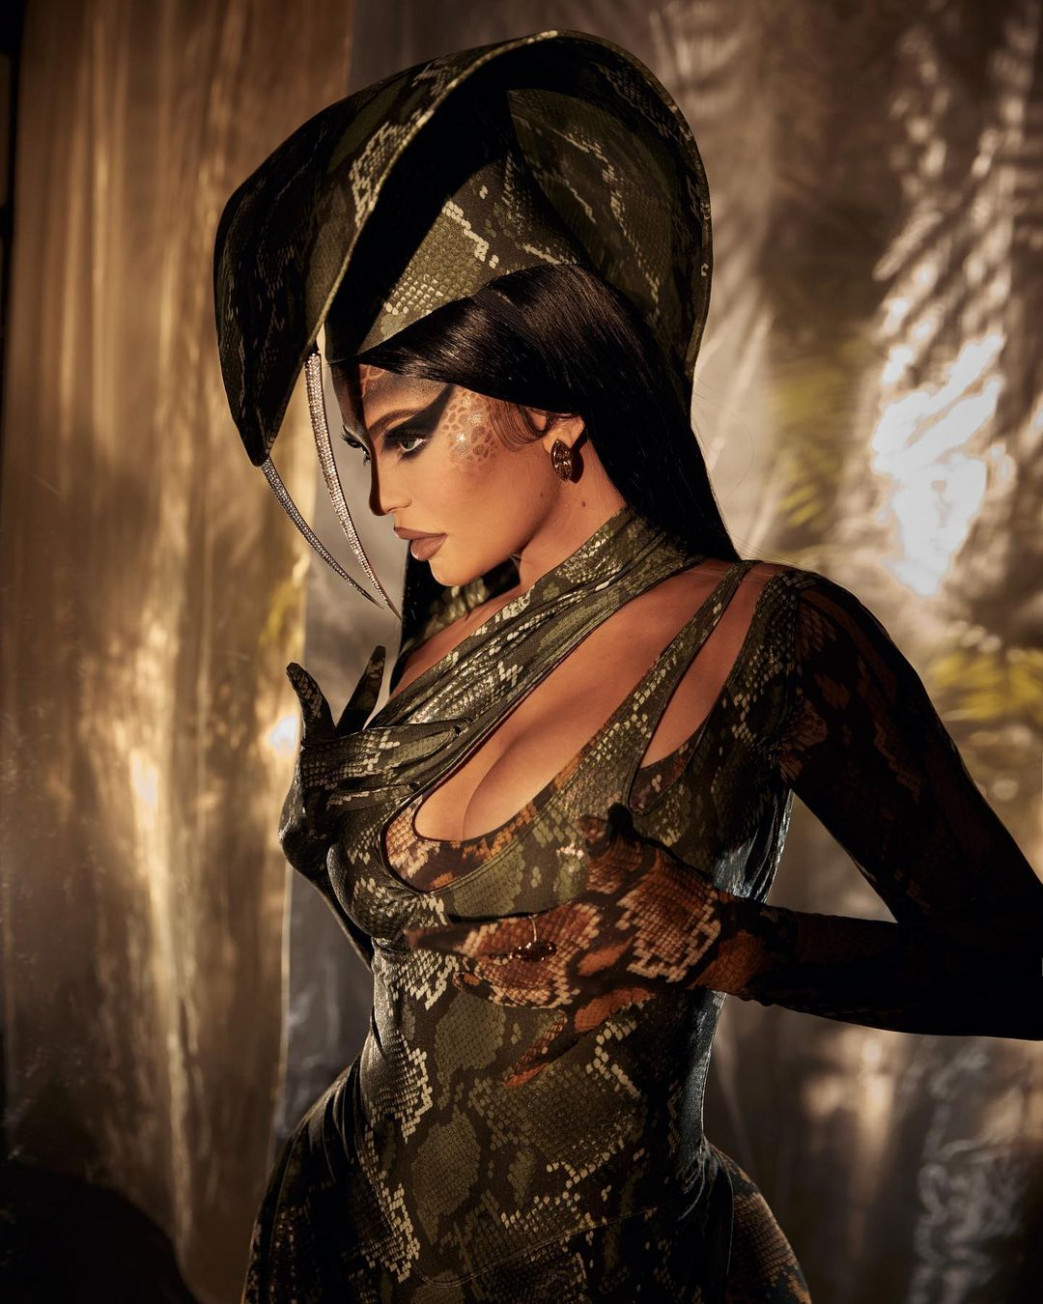 Kylie-Jenner-In-Cobra-Hallowen-Costume-7.jpg